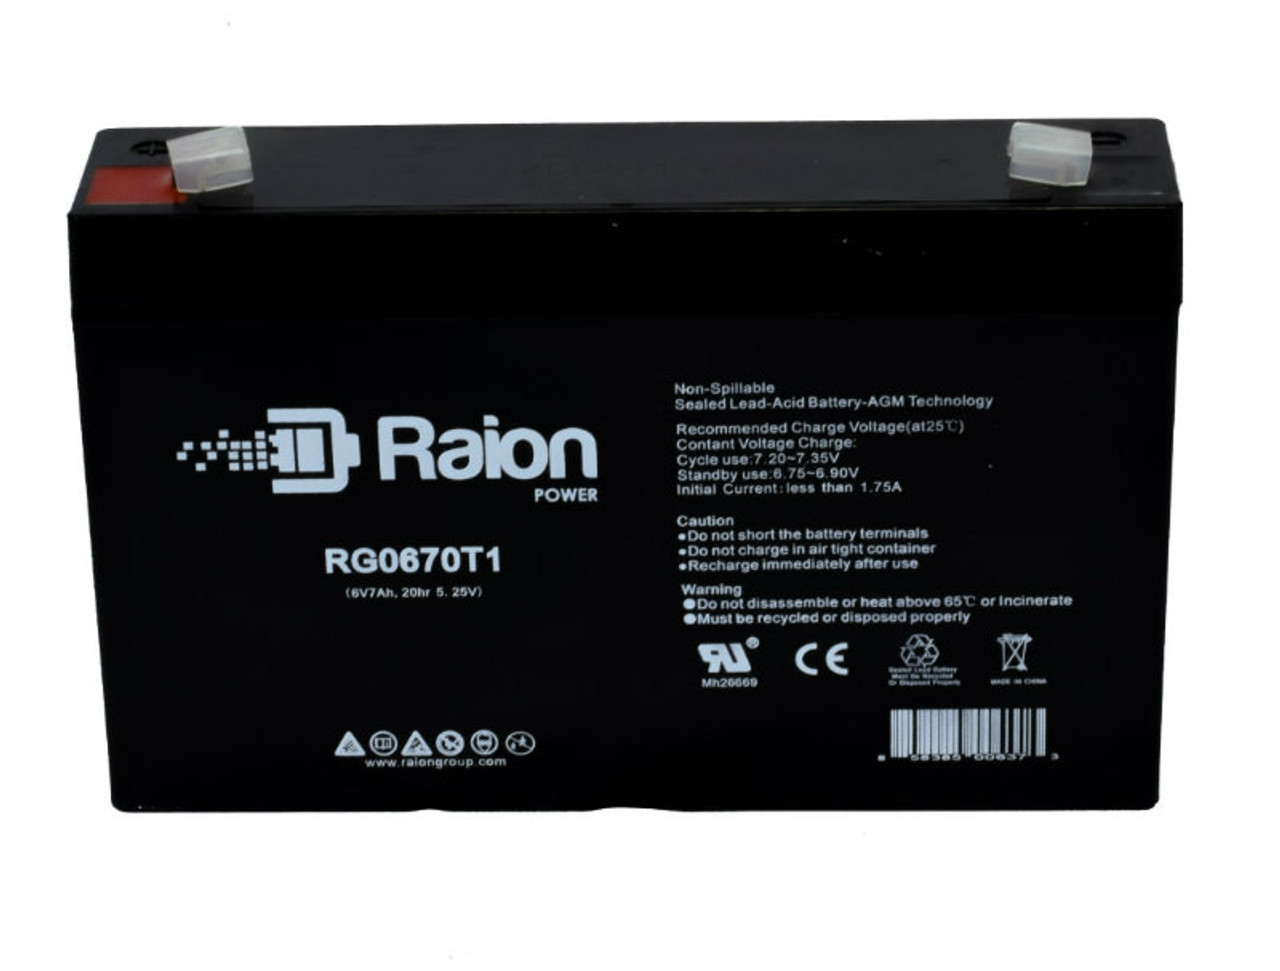 Raion Power RG0670T1 SLA Battery for Landport LP6-7.0 OEM Battery